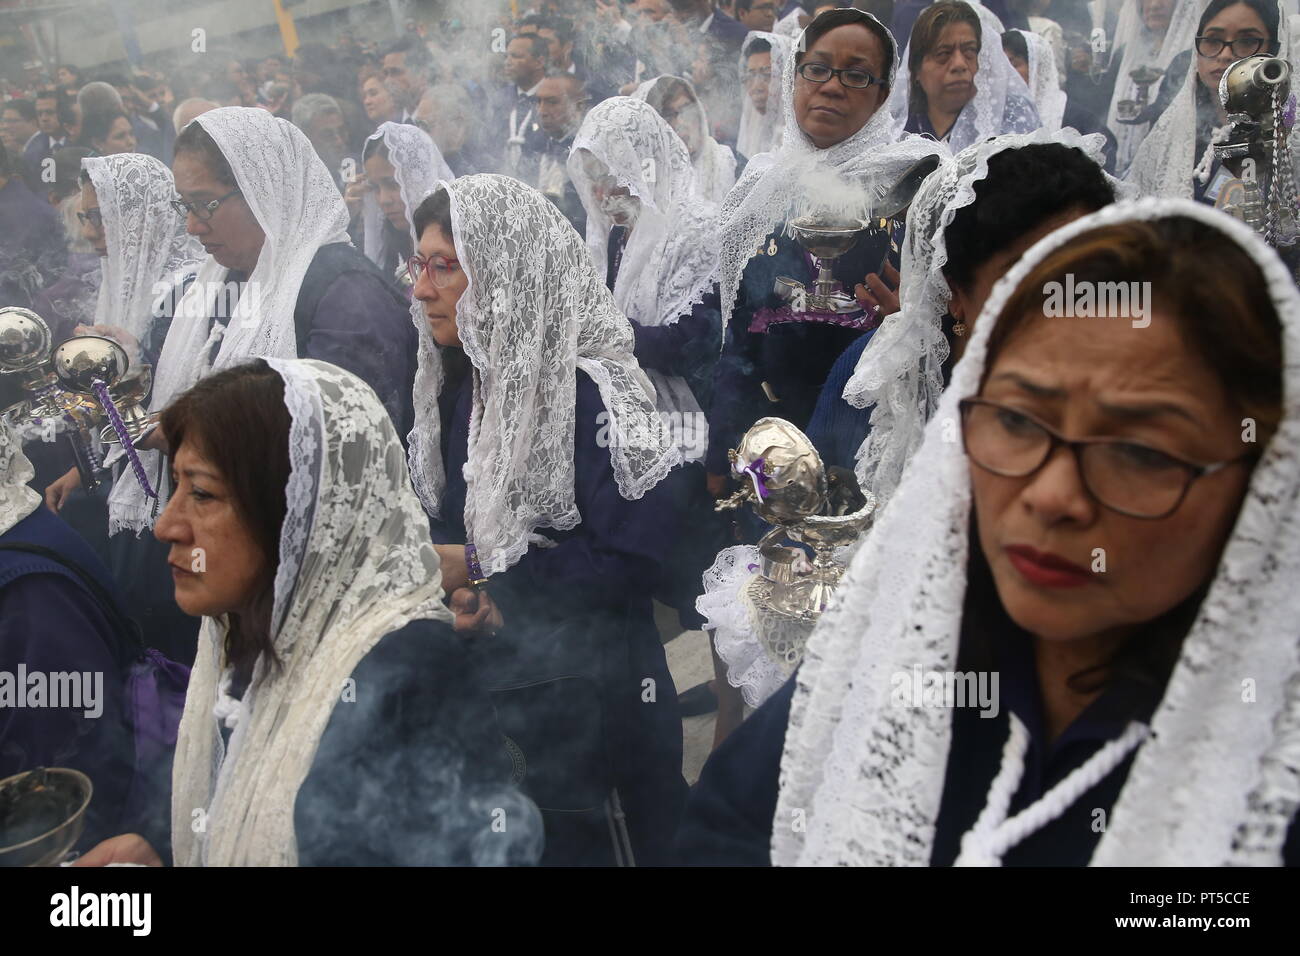 Lima, Perù. 06 ott 2018. Le donne prendono parte a una processione in onore del 'Senor de los Milagros' (il Signore dei Miracoli). 'Senor de los Milagros' è una festa cattolica che si celebra ogni anno nella città di Lima. Credito: Geraldo CAS/dpa/Alamy Live News Foto Stock